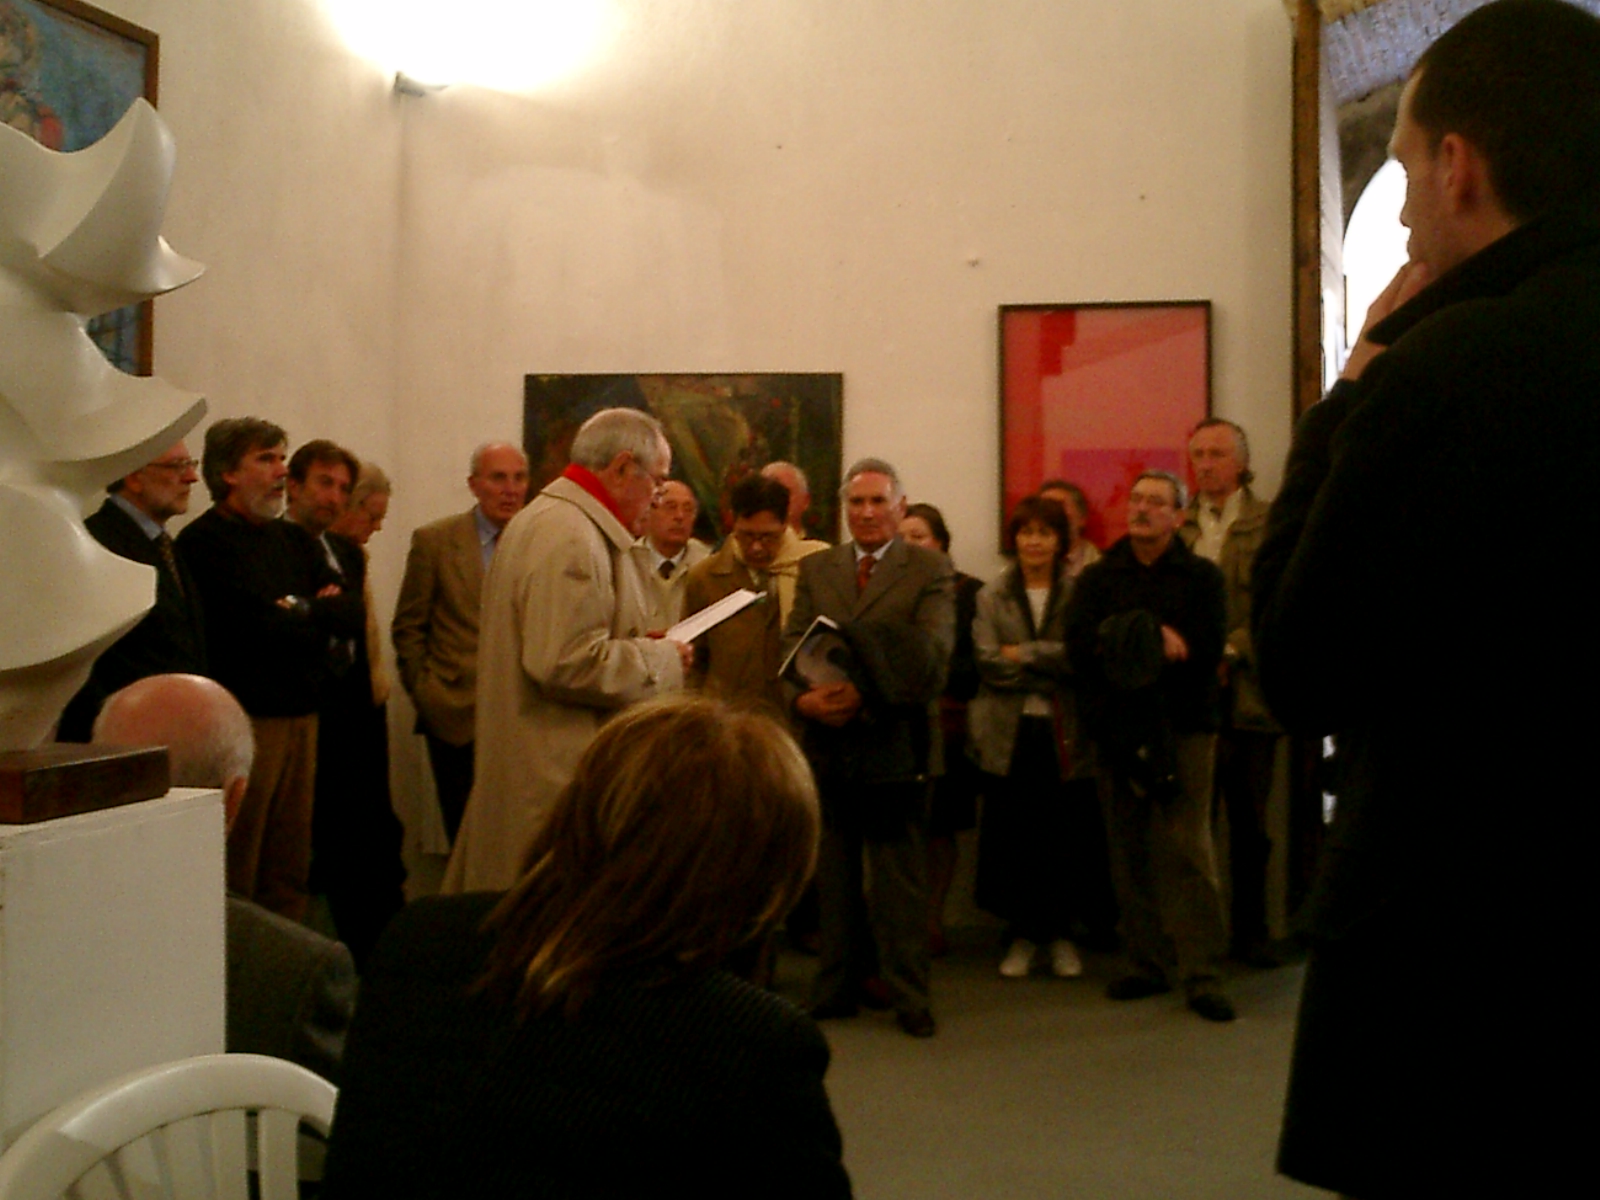 Nella foto alcuni momenti dell’incontro in occasione dell’inaugurazione della mostra